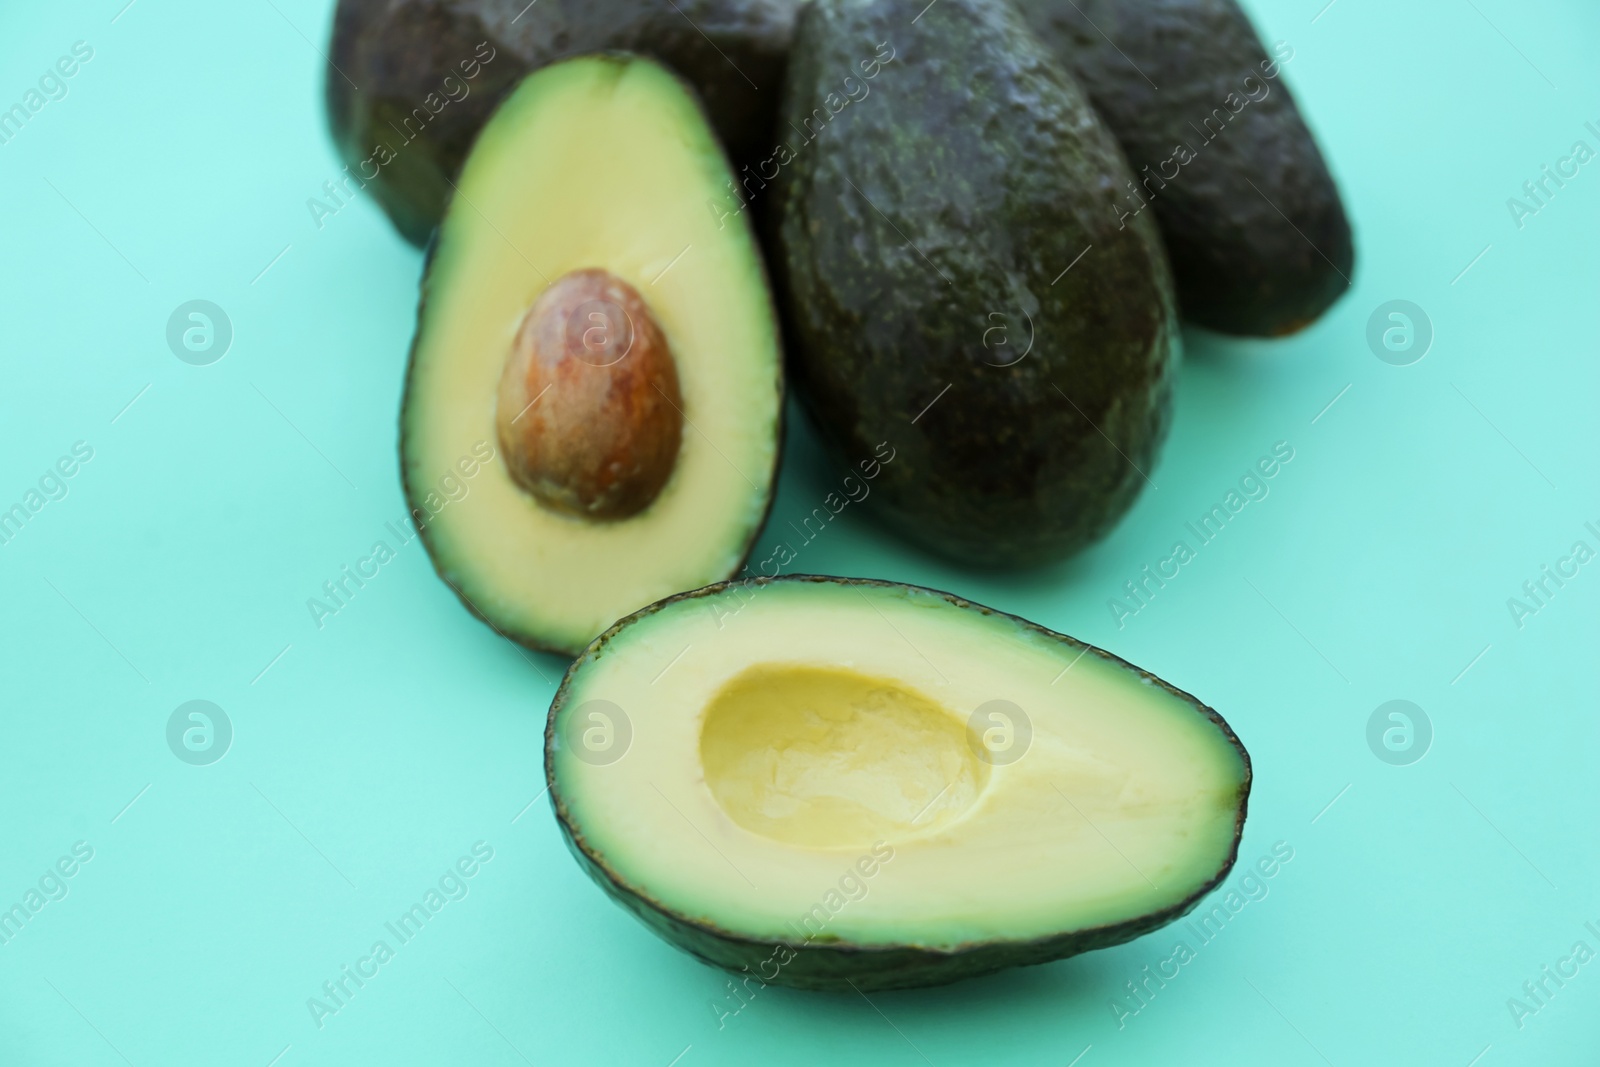 Photo of Tasty fresh ripe avocados on turquoise background